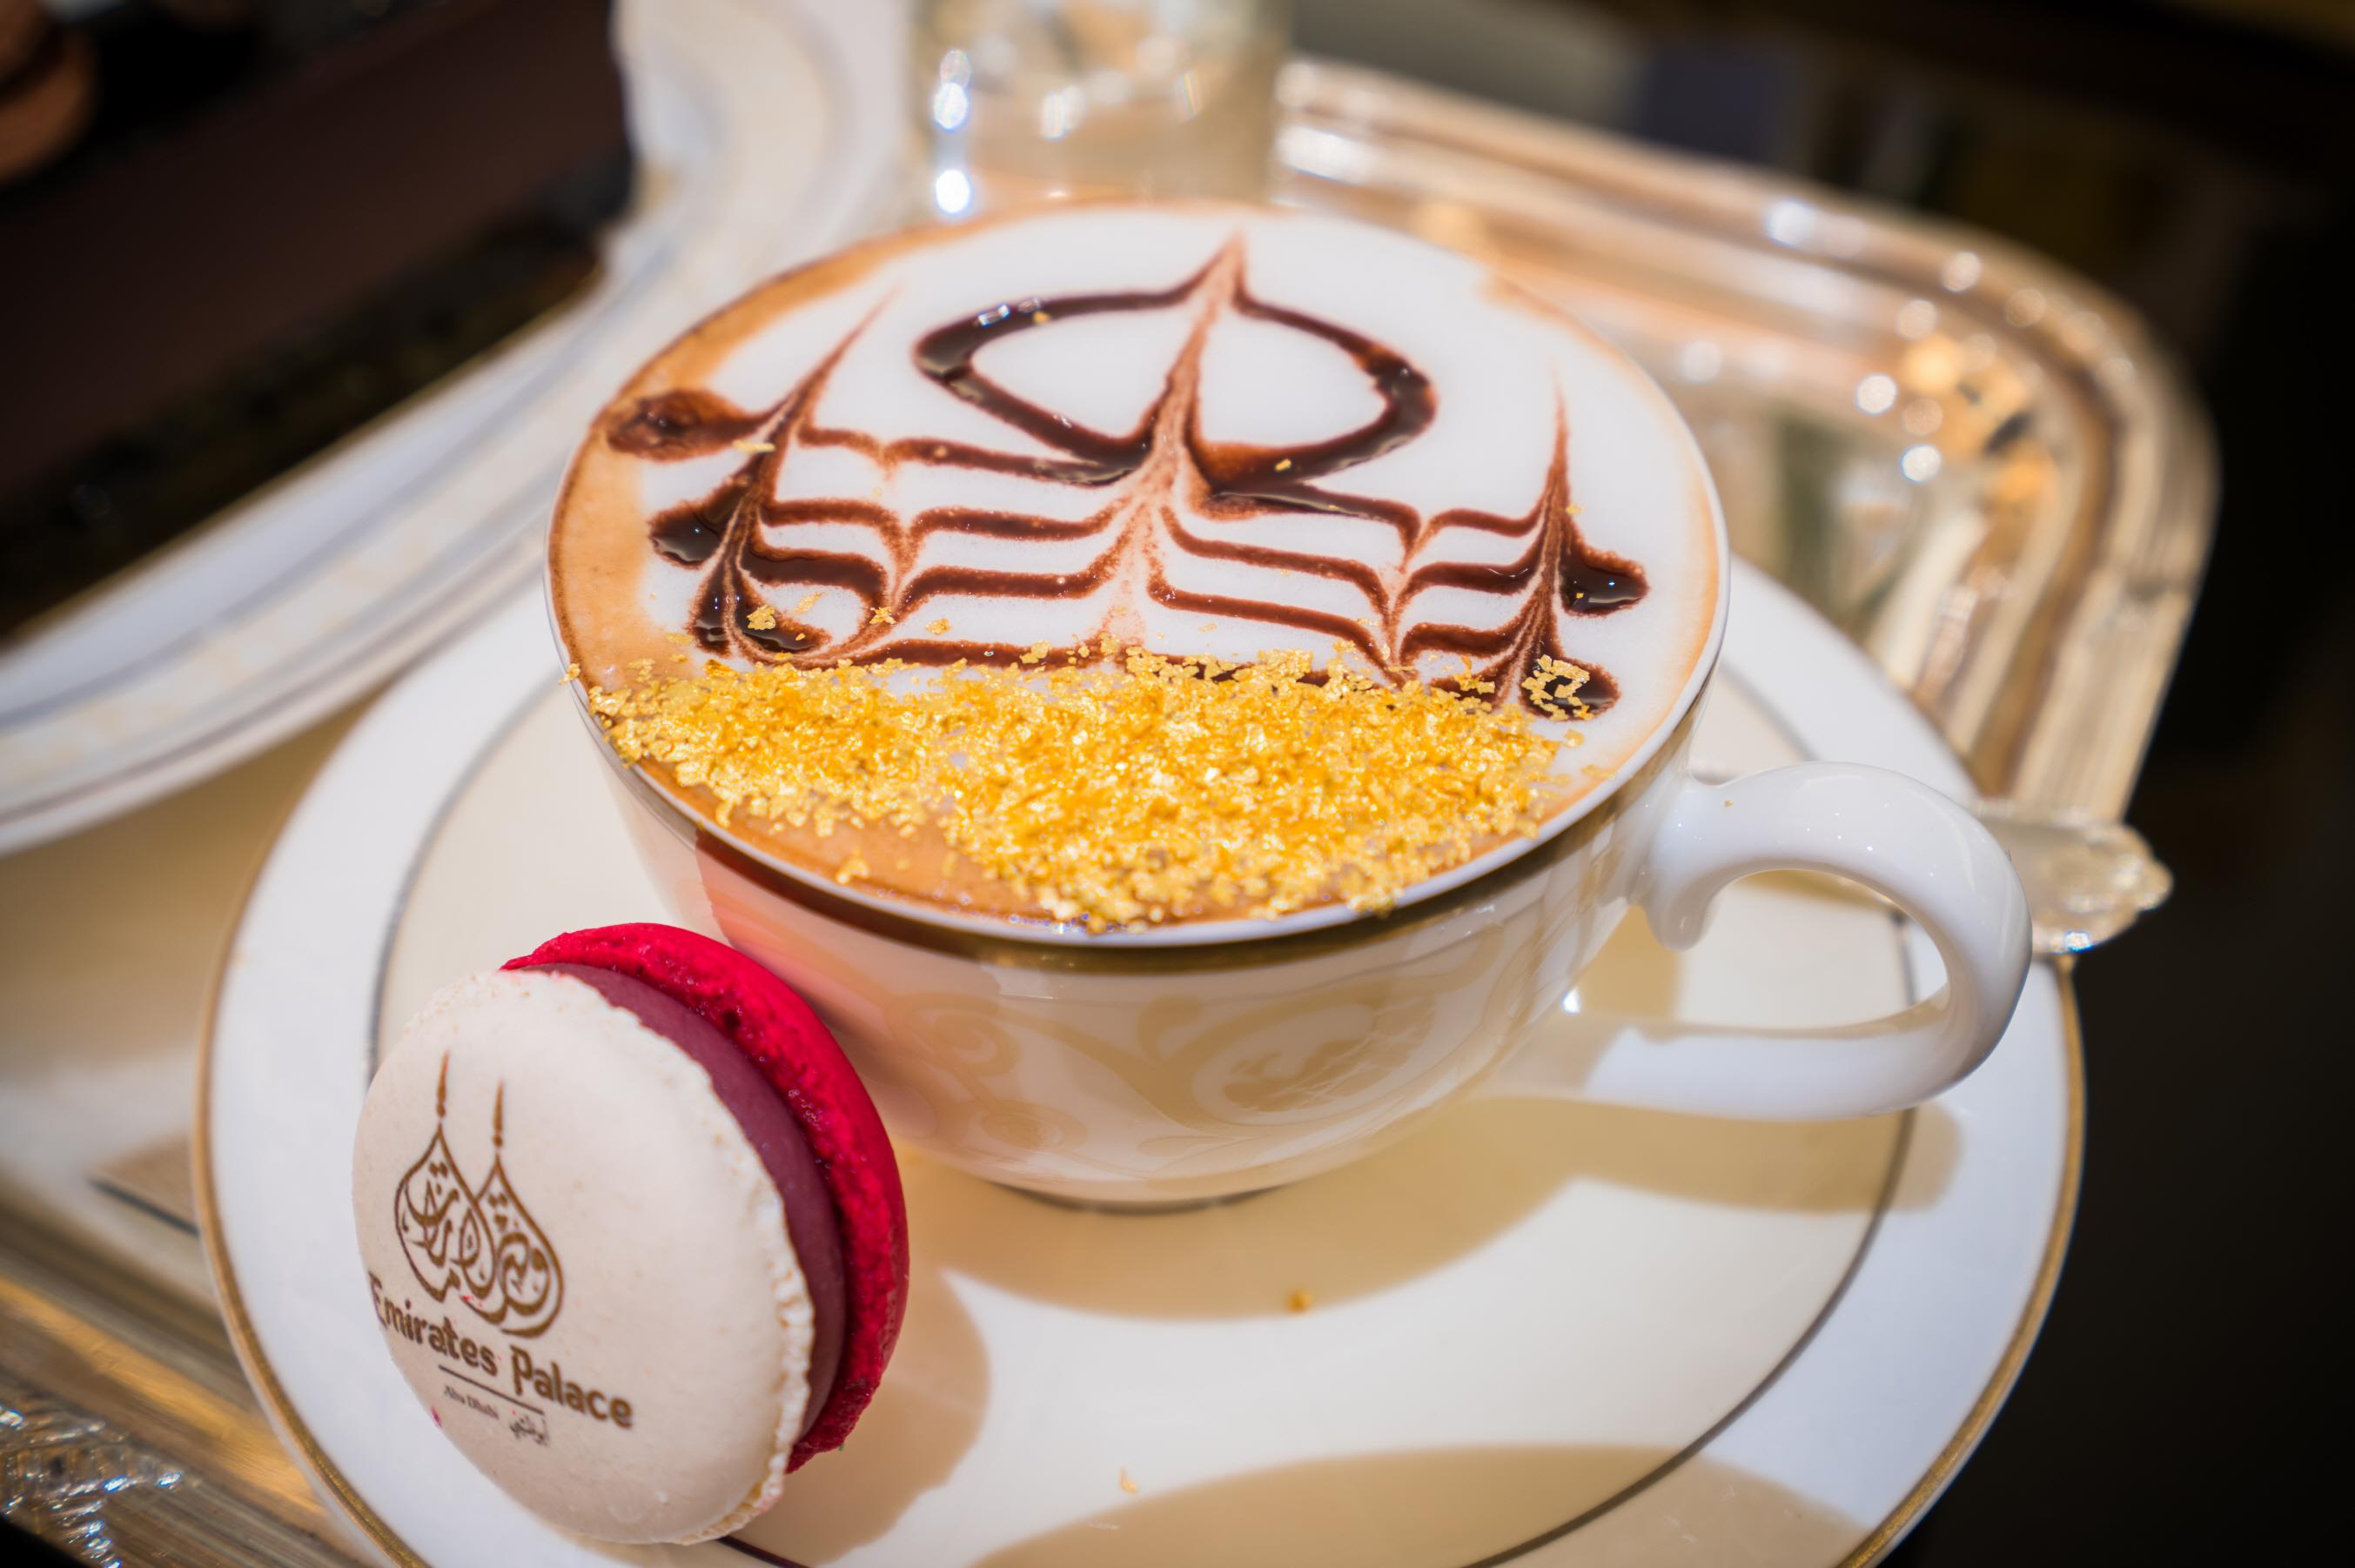 팰리스호텔 골드커피  Emirates Palace hotel gold mixed coffee